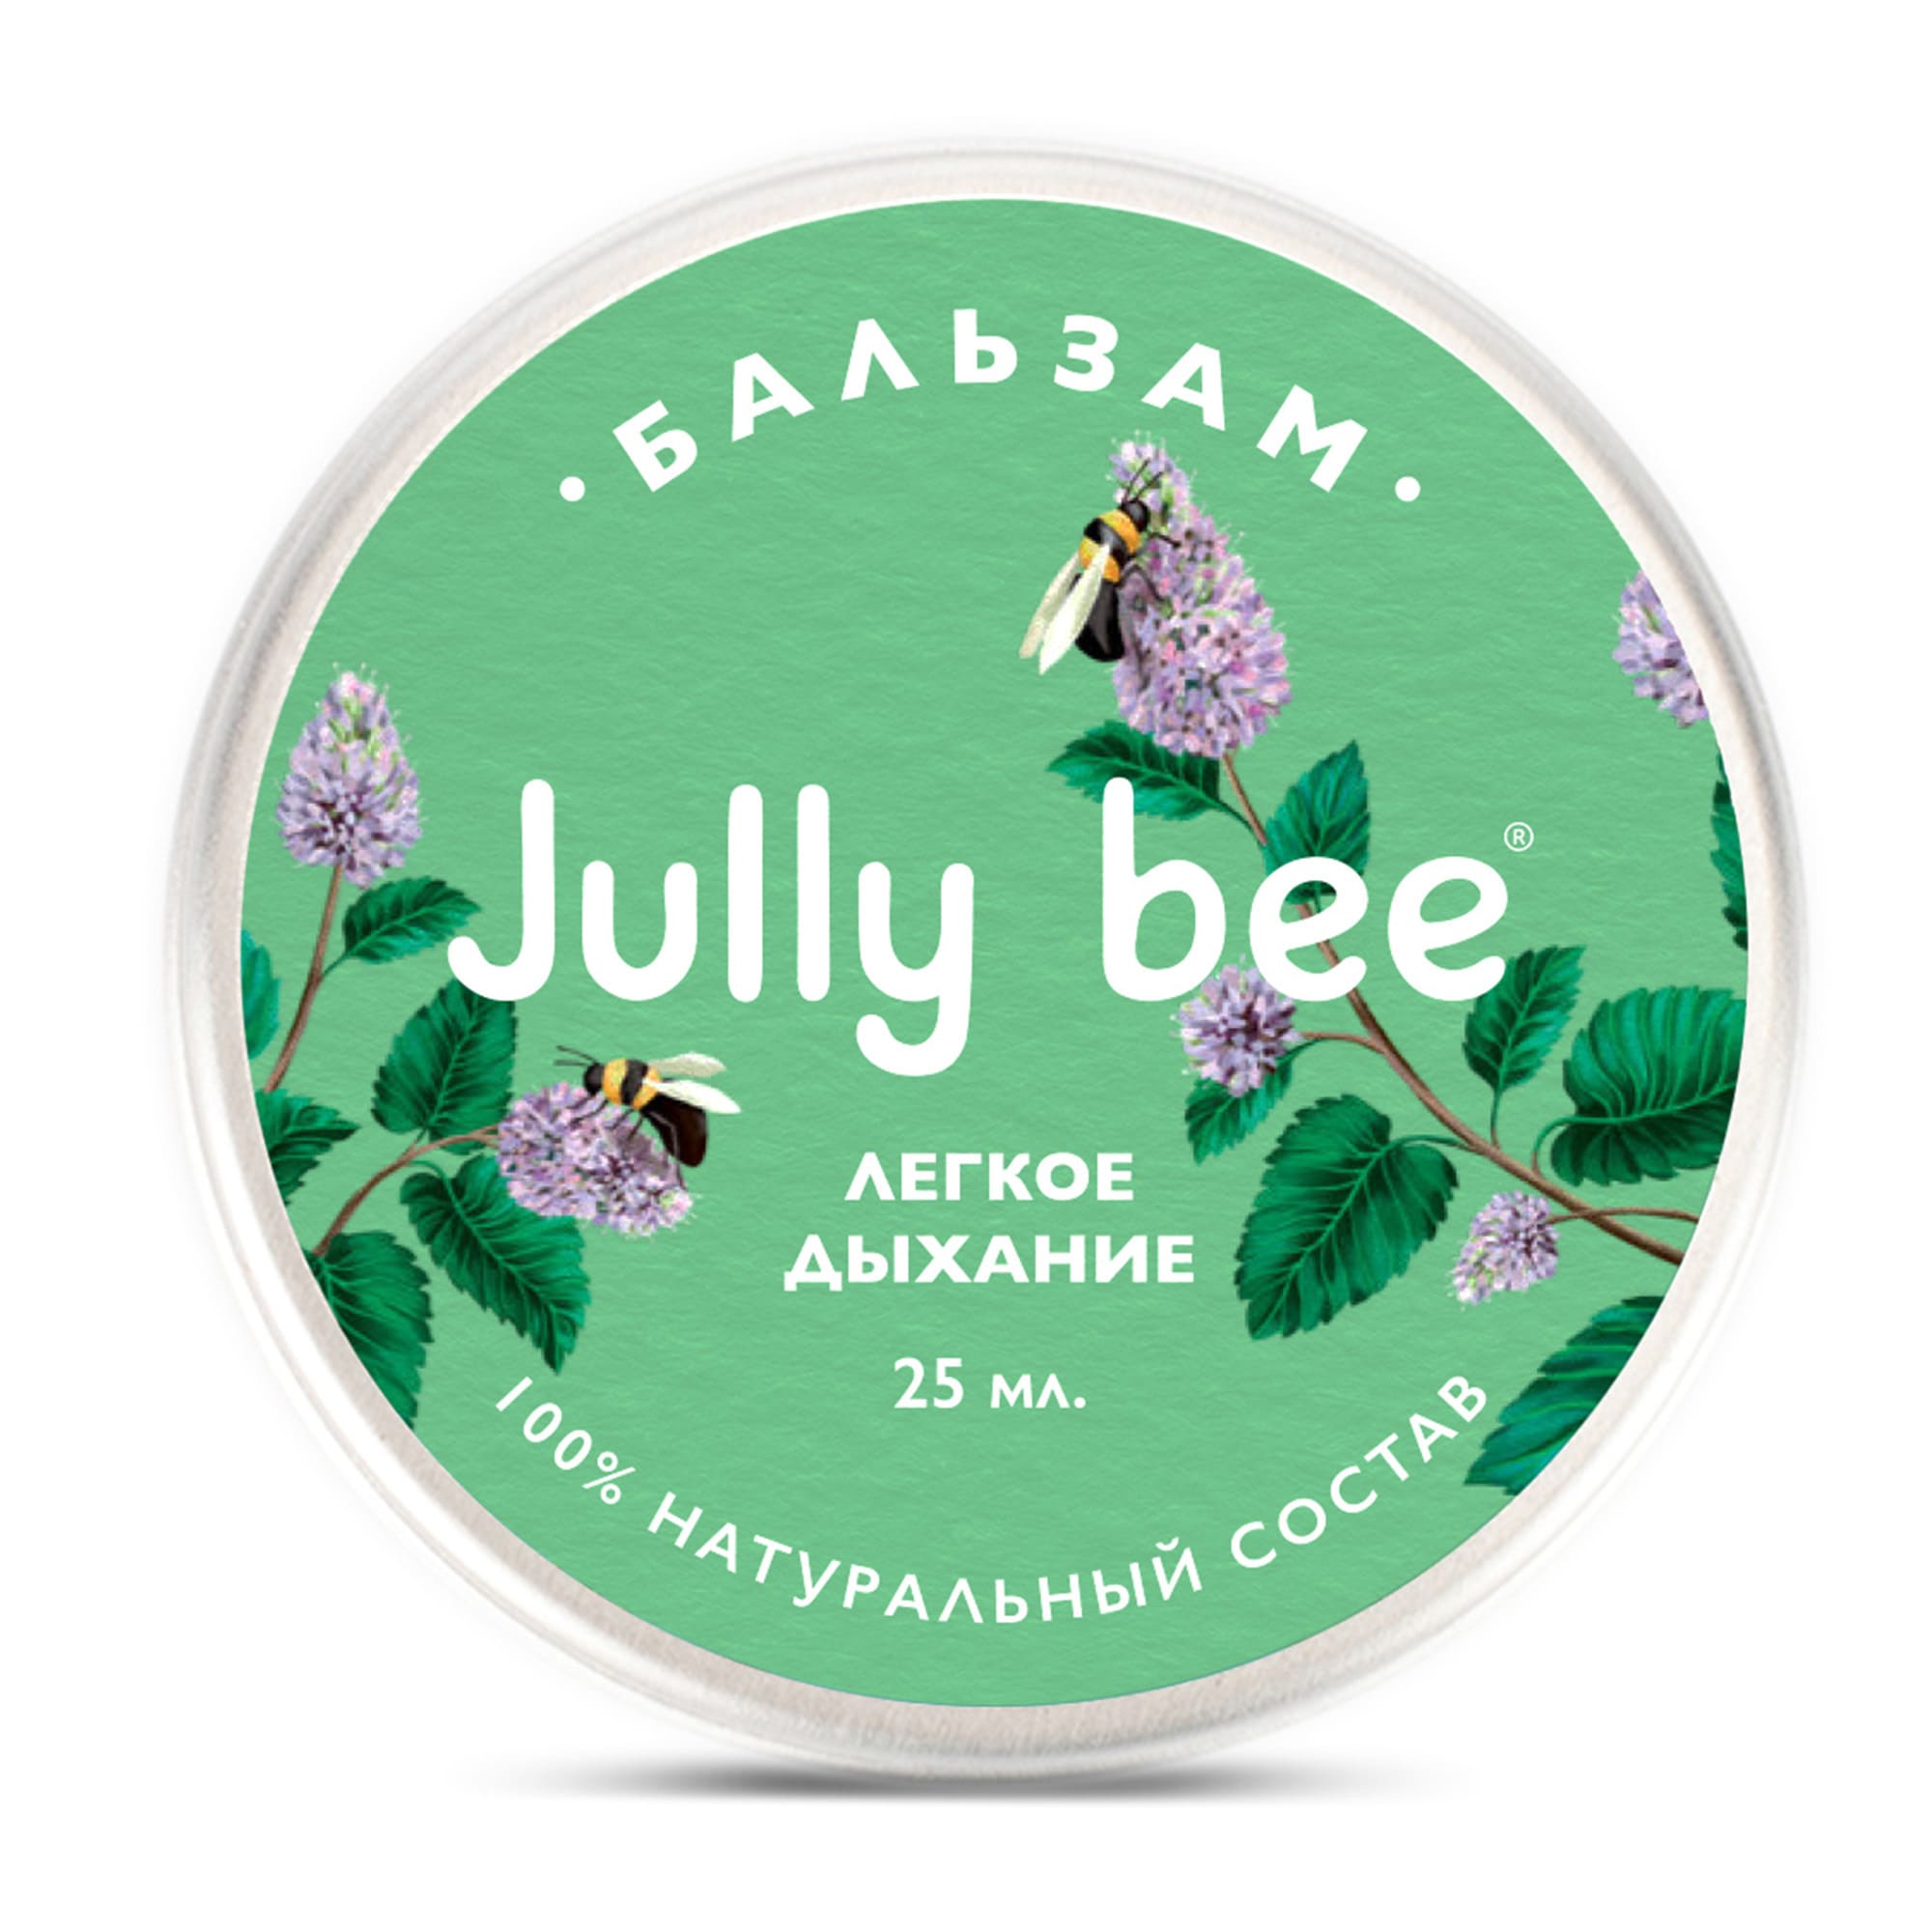 Бальзам для тела Jully Bee легкое дыхание, лечебный, 25 мл avene трикзера нутришн молочко для тела легкое питательное 400 мл